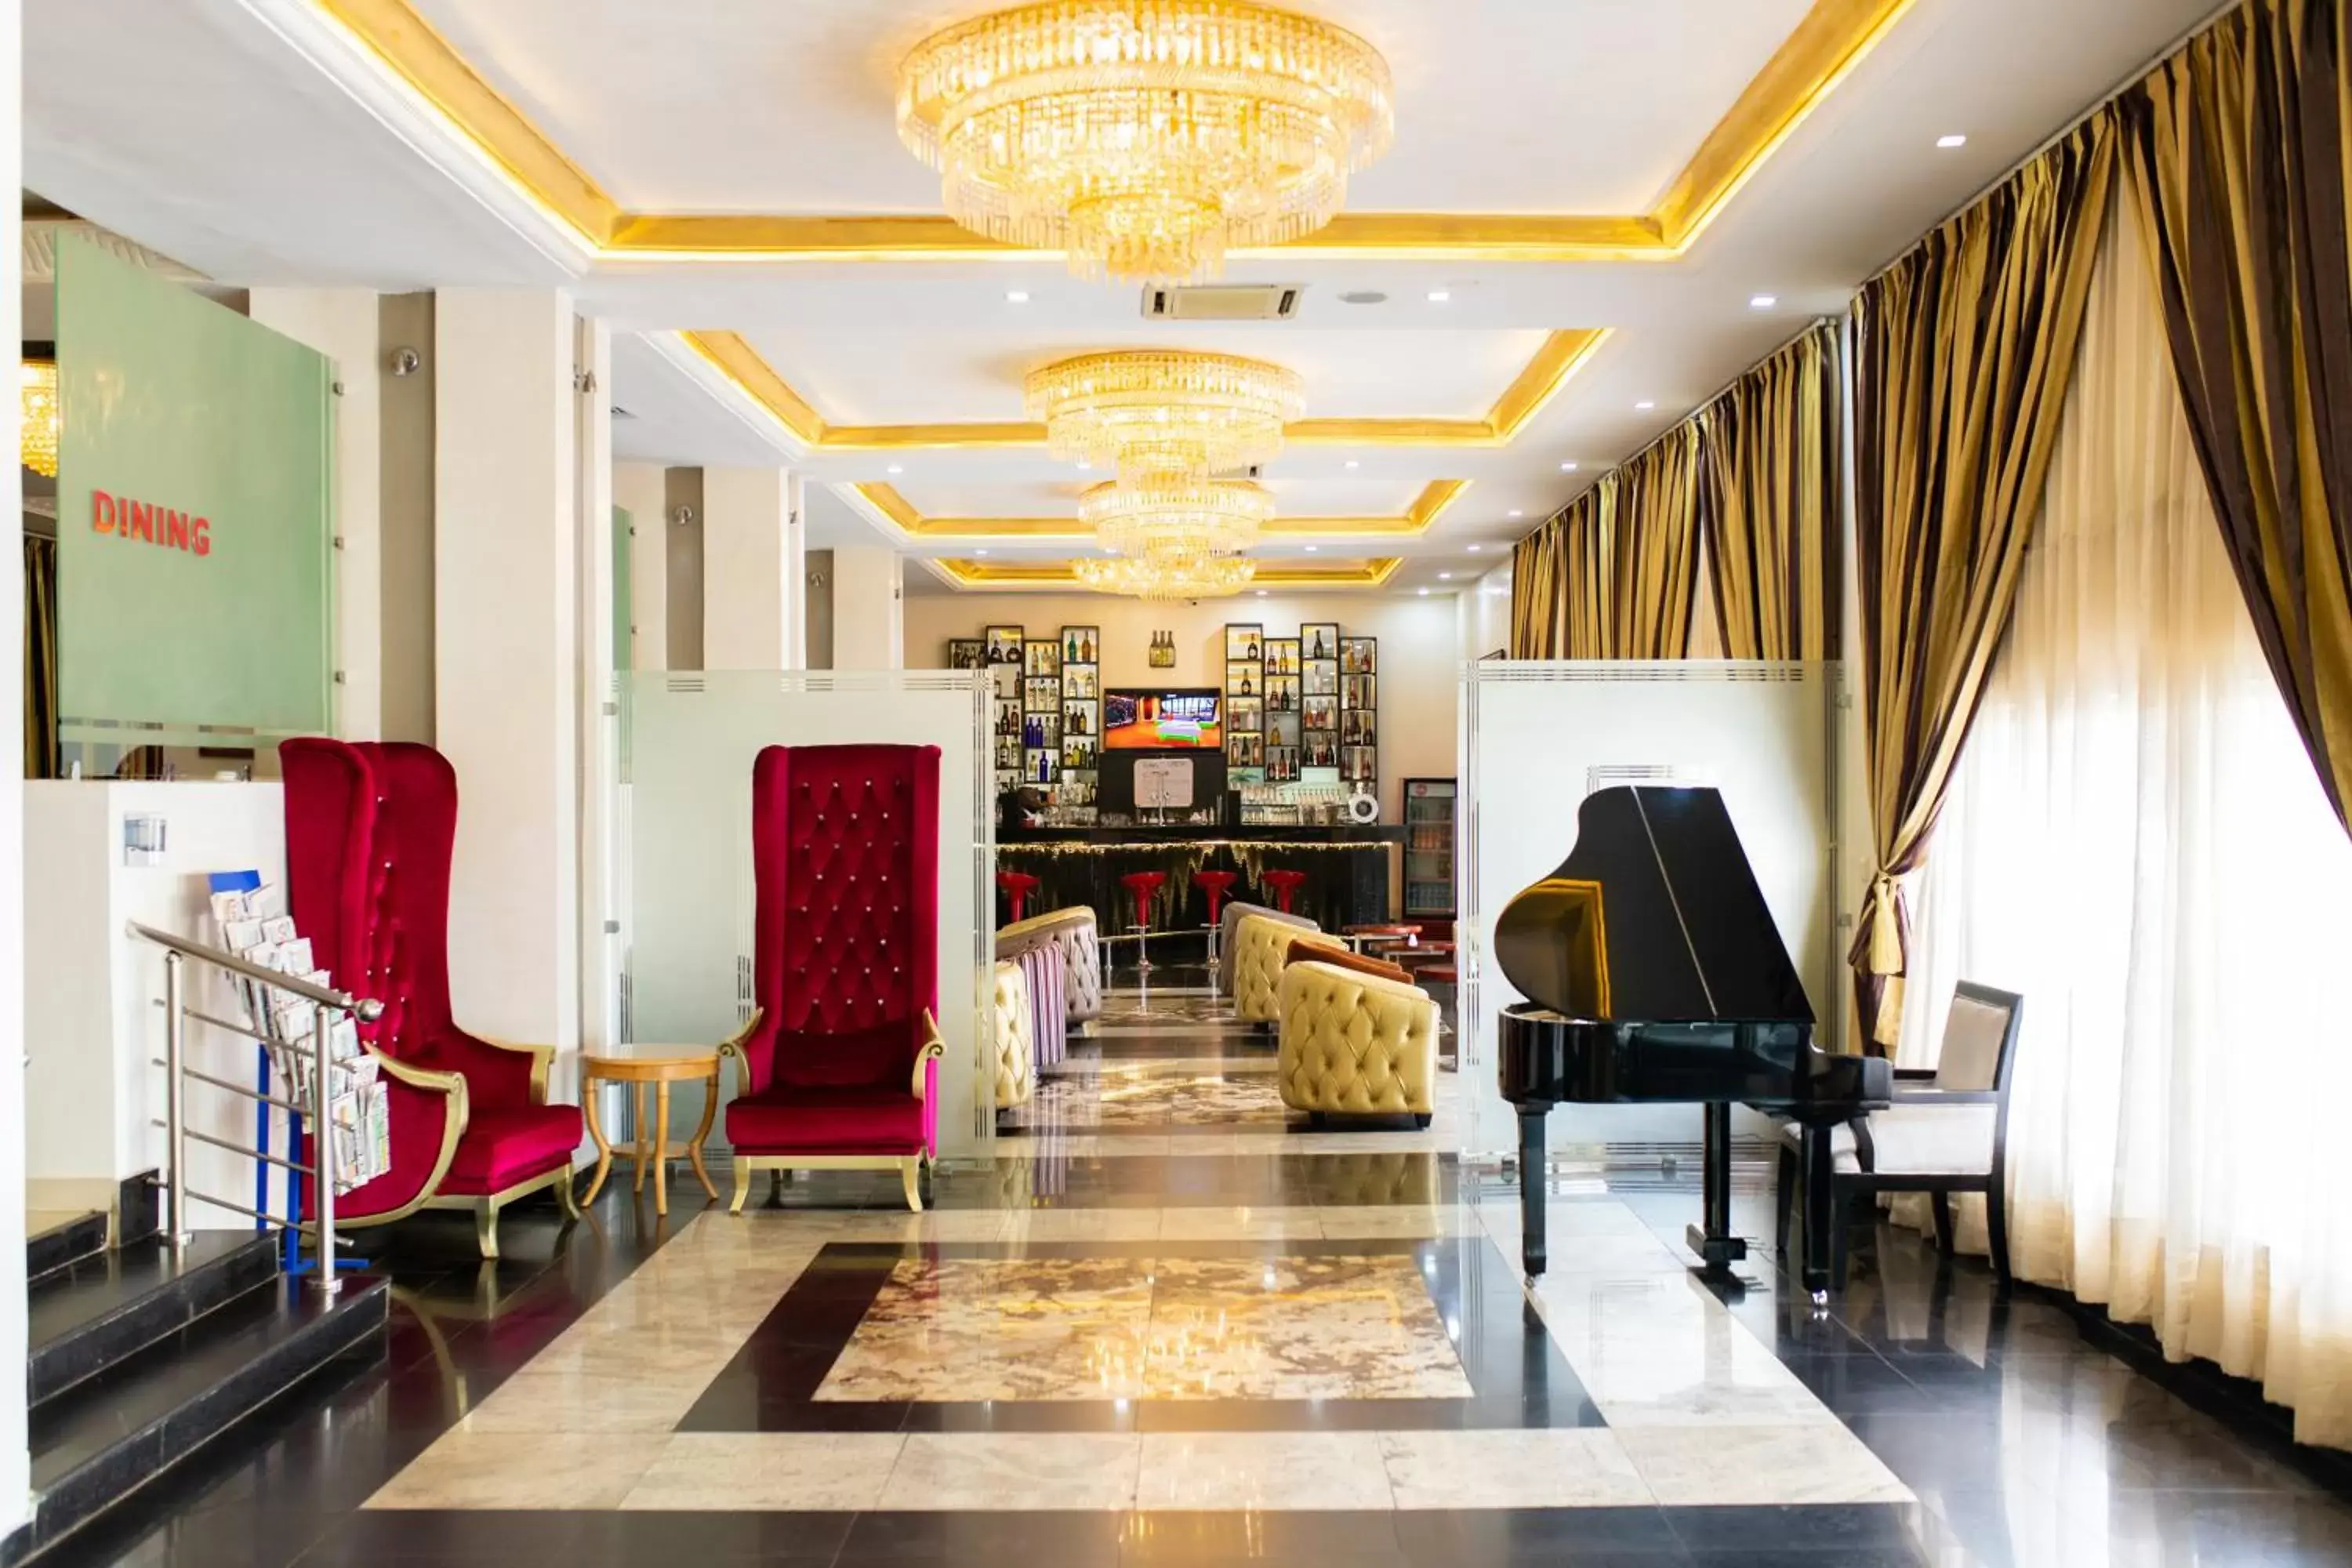 Lobby or reception in Hotel Sunshine Enugu